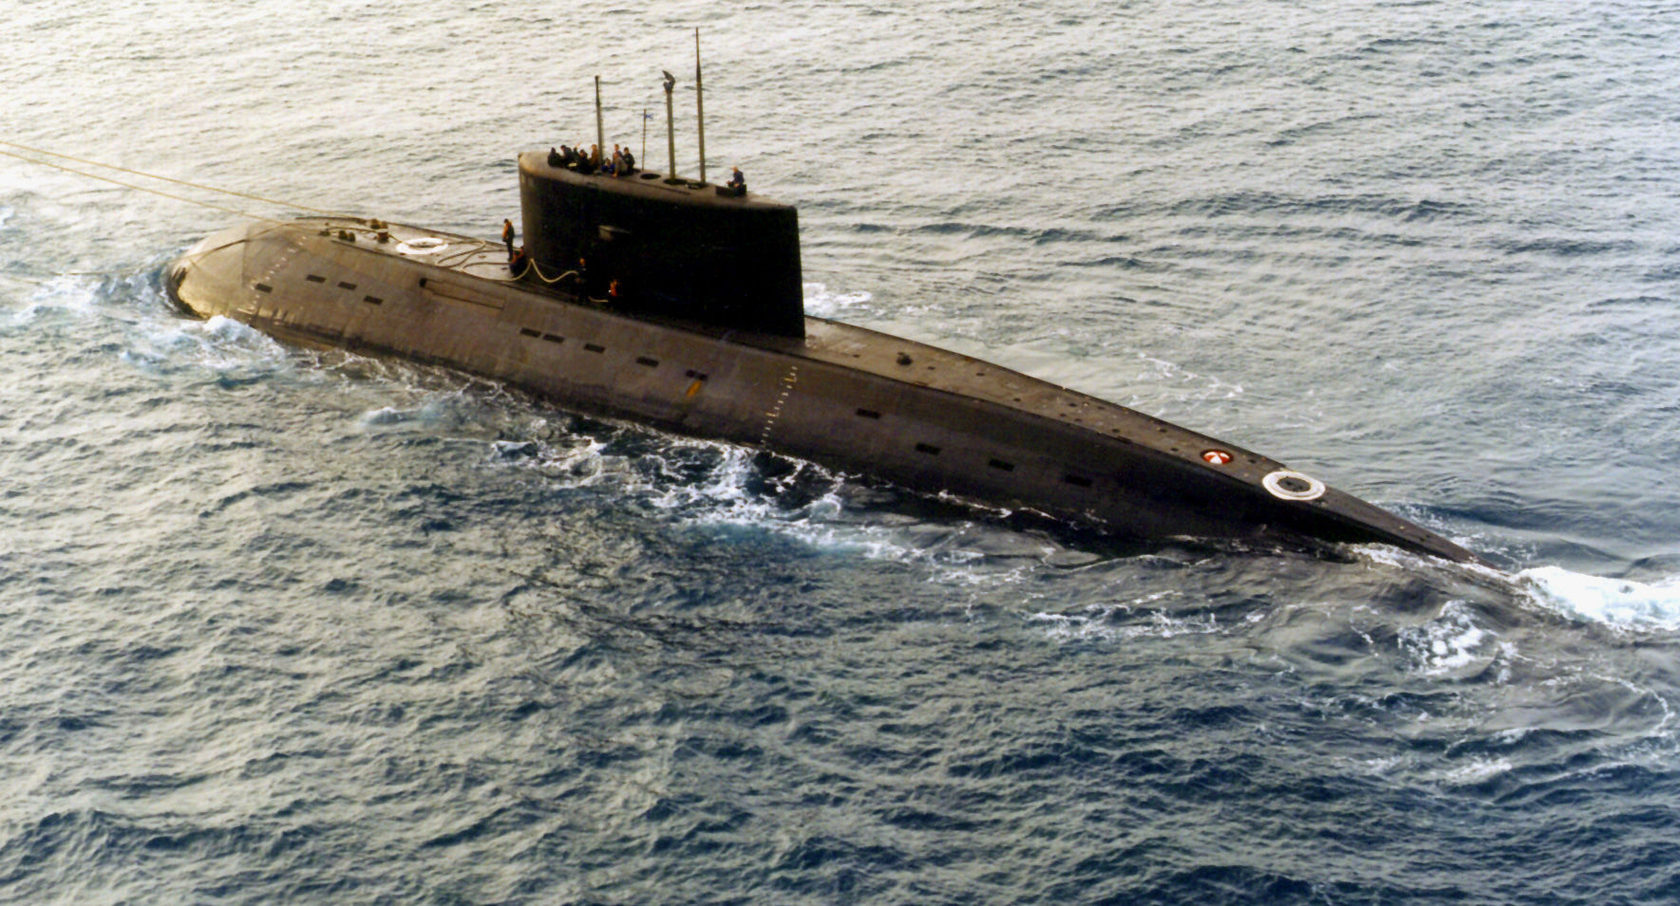  زیردریایی های روسی 